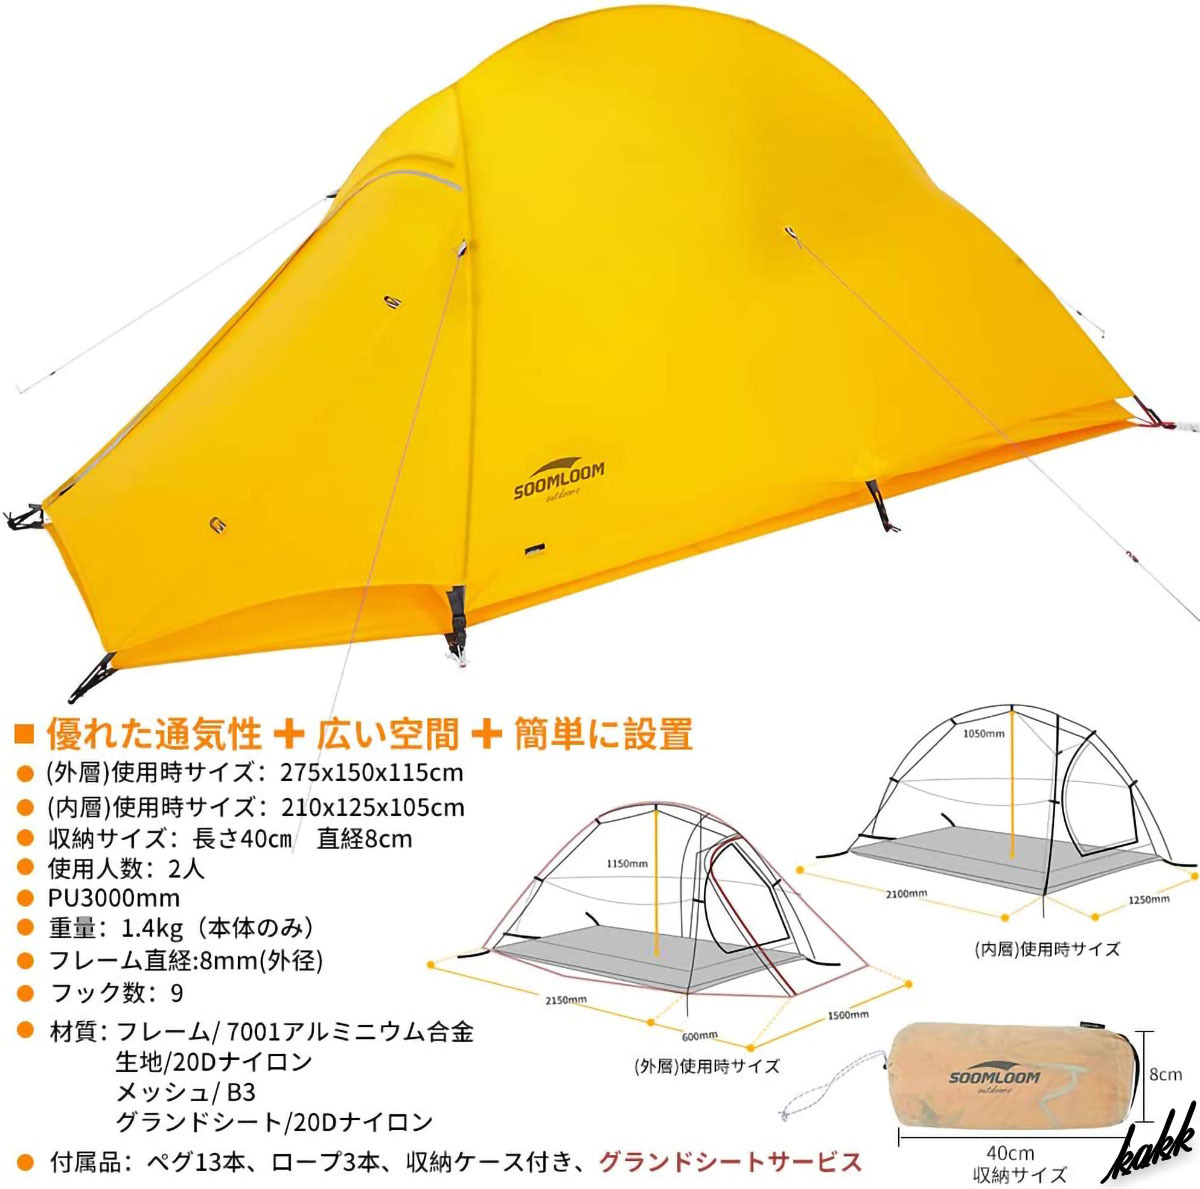 【Y型フレームで誰でもに簡単設営可能】 テント ツーリングキャンプ 耐水圧3000mm 二層構造 メッシュ生地 ソロキャン アウトドア_画像8